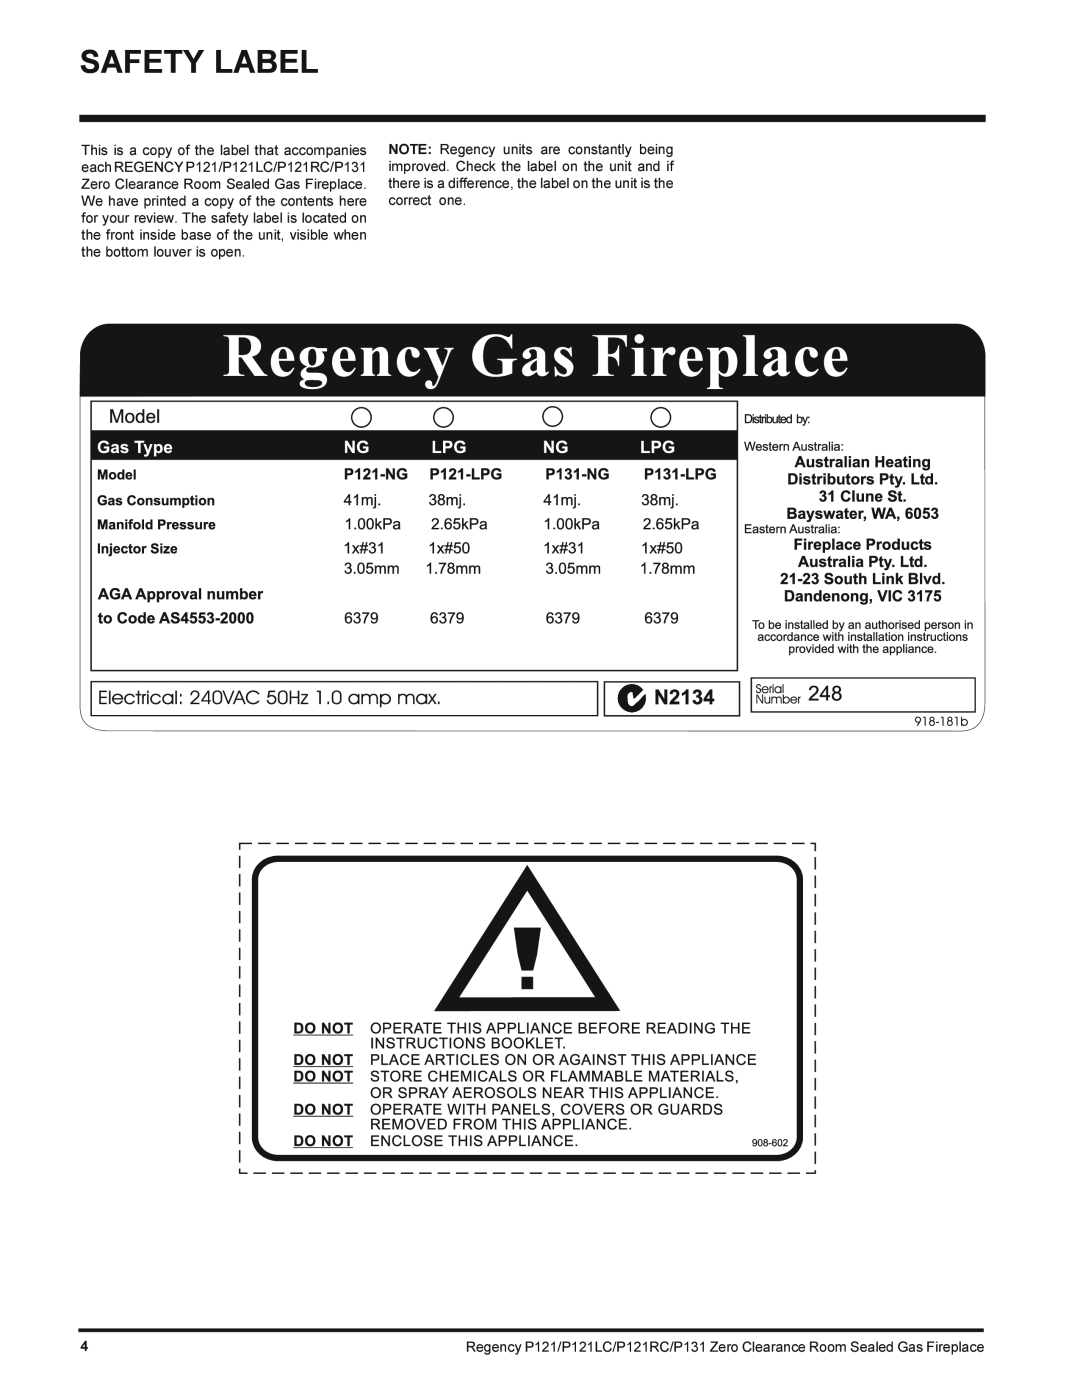 Regency P131-NG, P121LC-NG, P121RC-NG, P121-NG installation manual Safety Label 